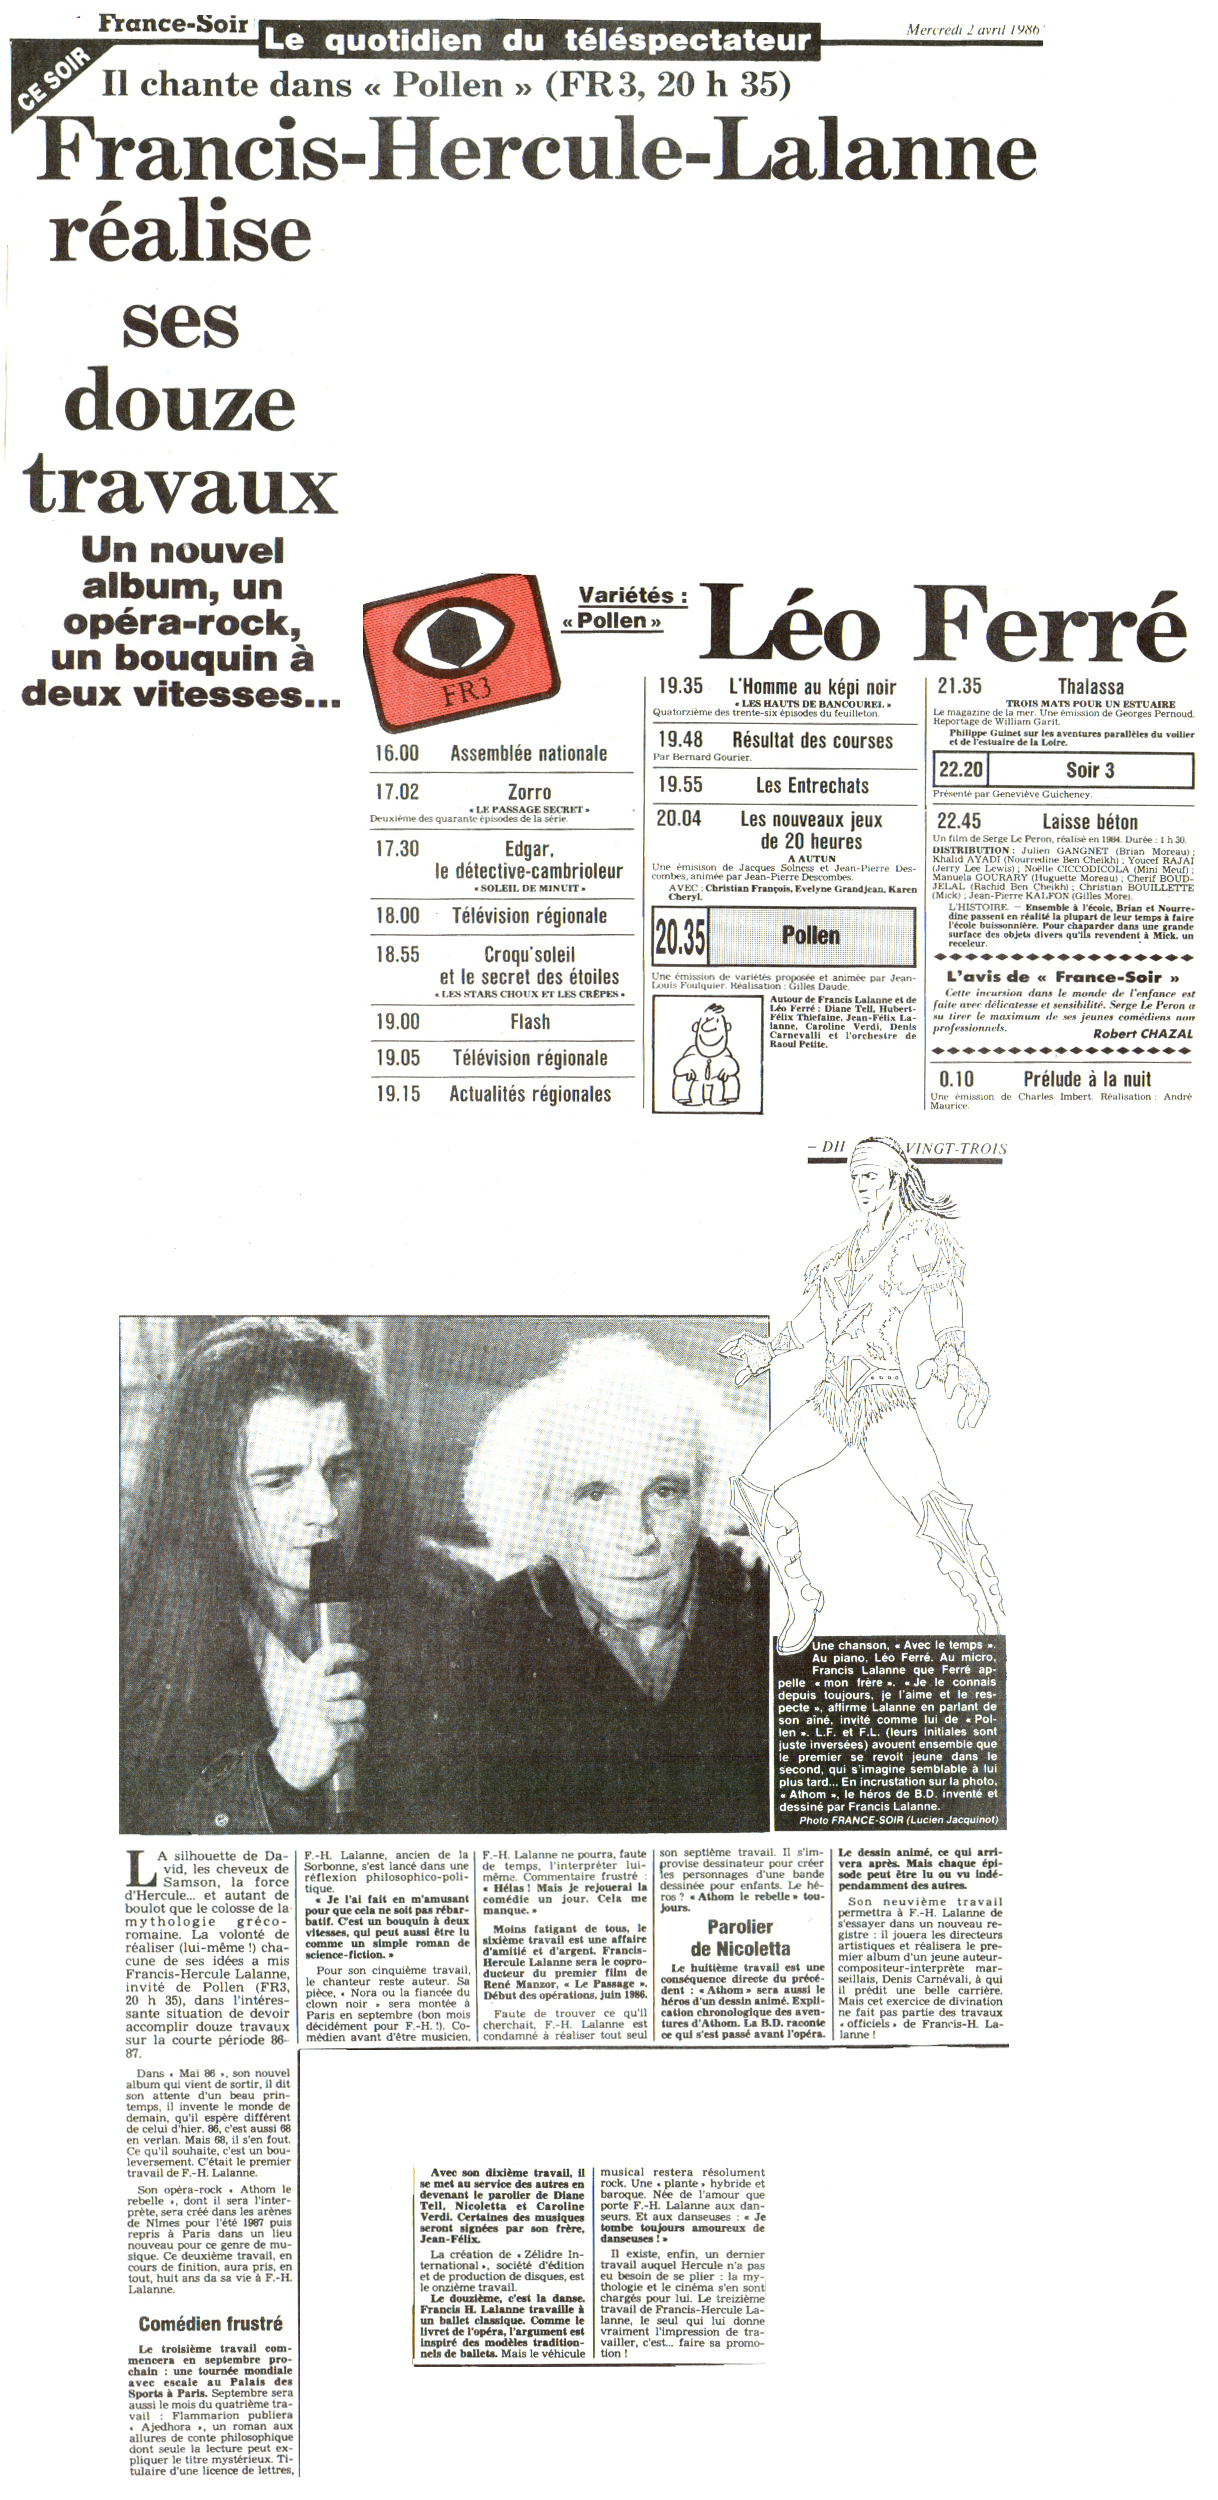 Léo Ferré - France Soir N°12 952 du 02/04/1986